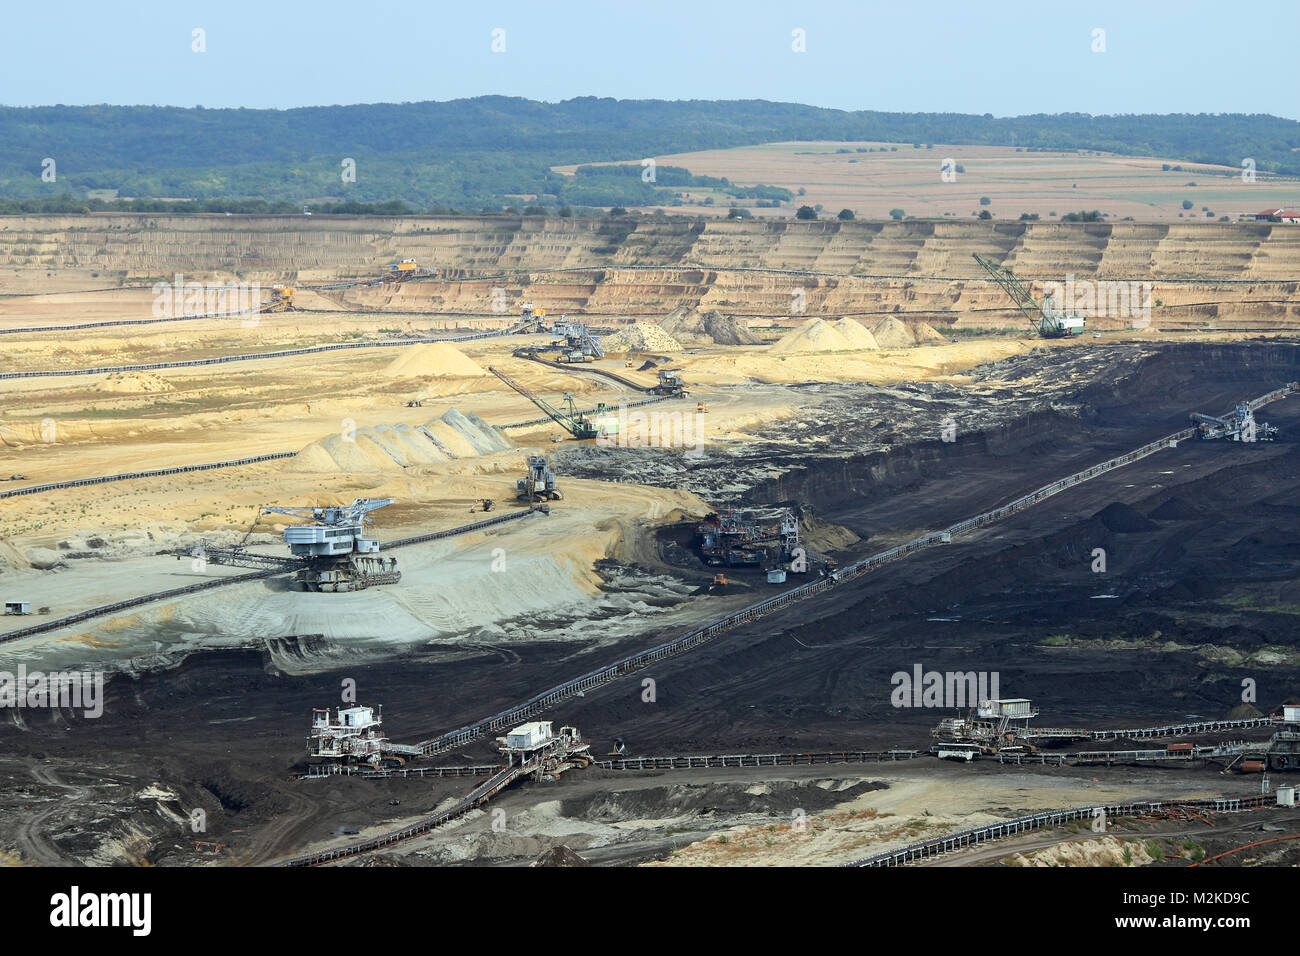 Les excavatrices et engins lourds de mine de charbon à ciel ouvert Serbie Kostolac Banque D'Images